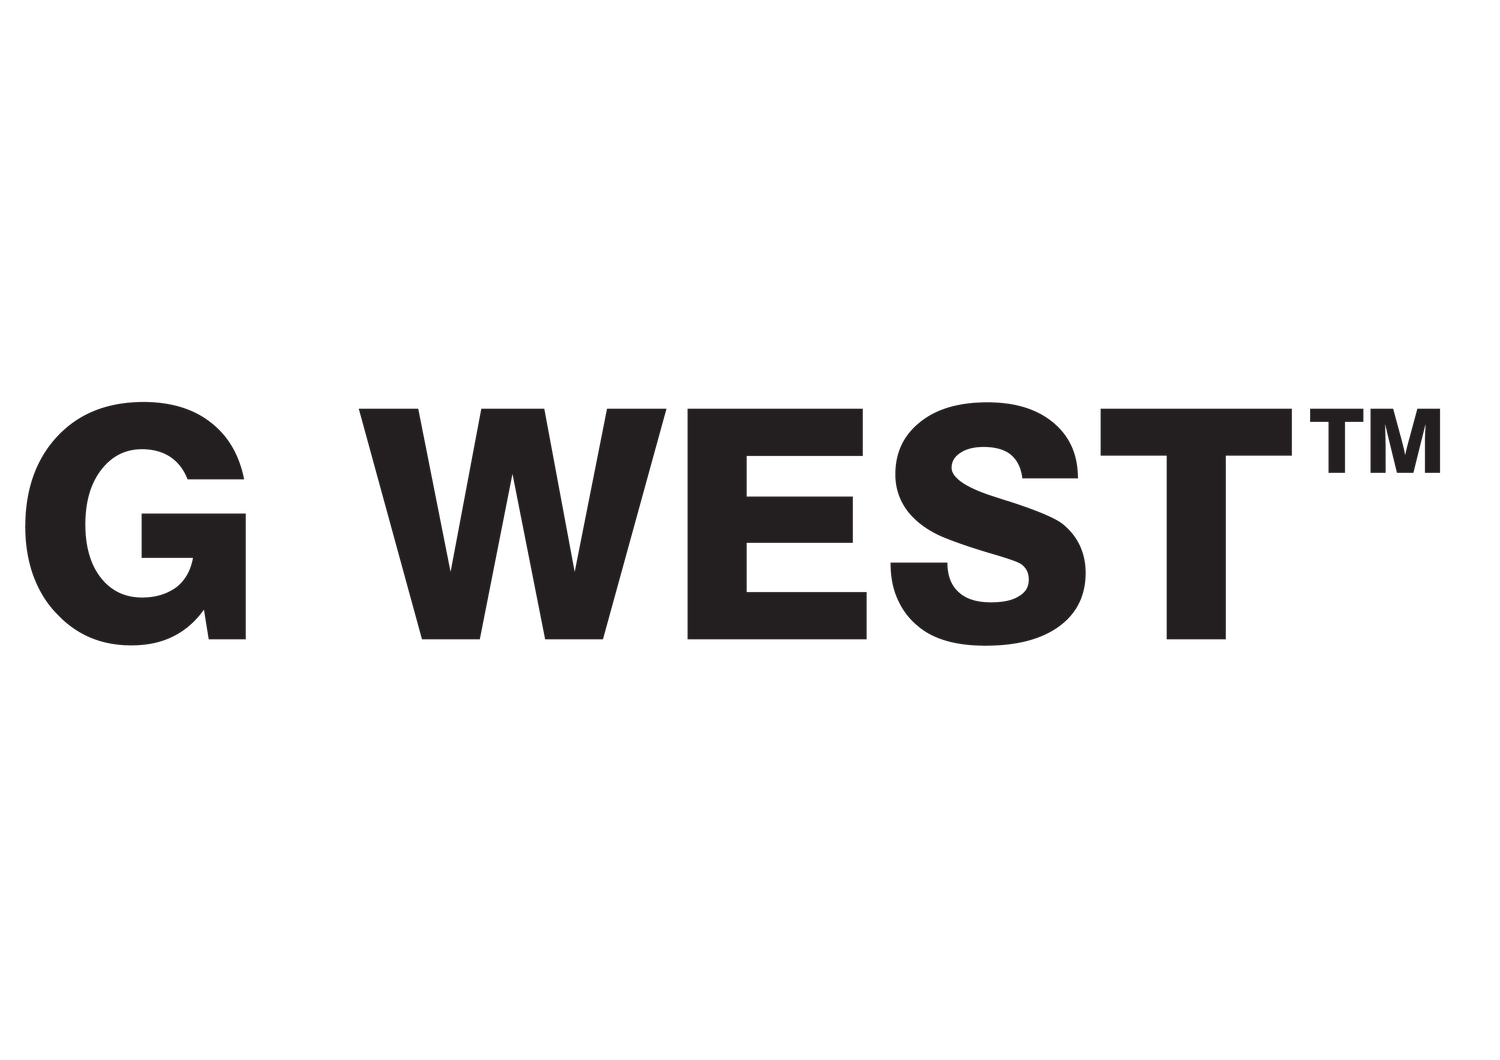 G West